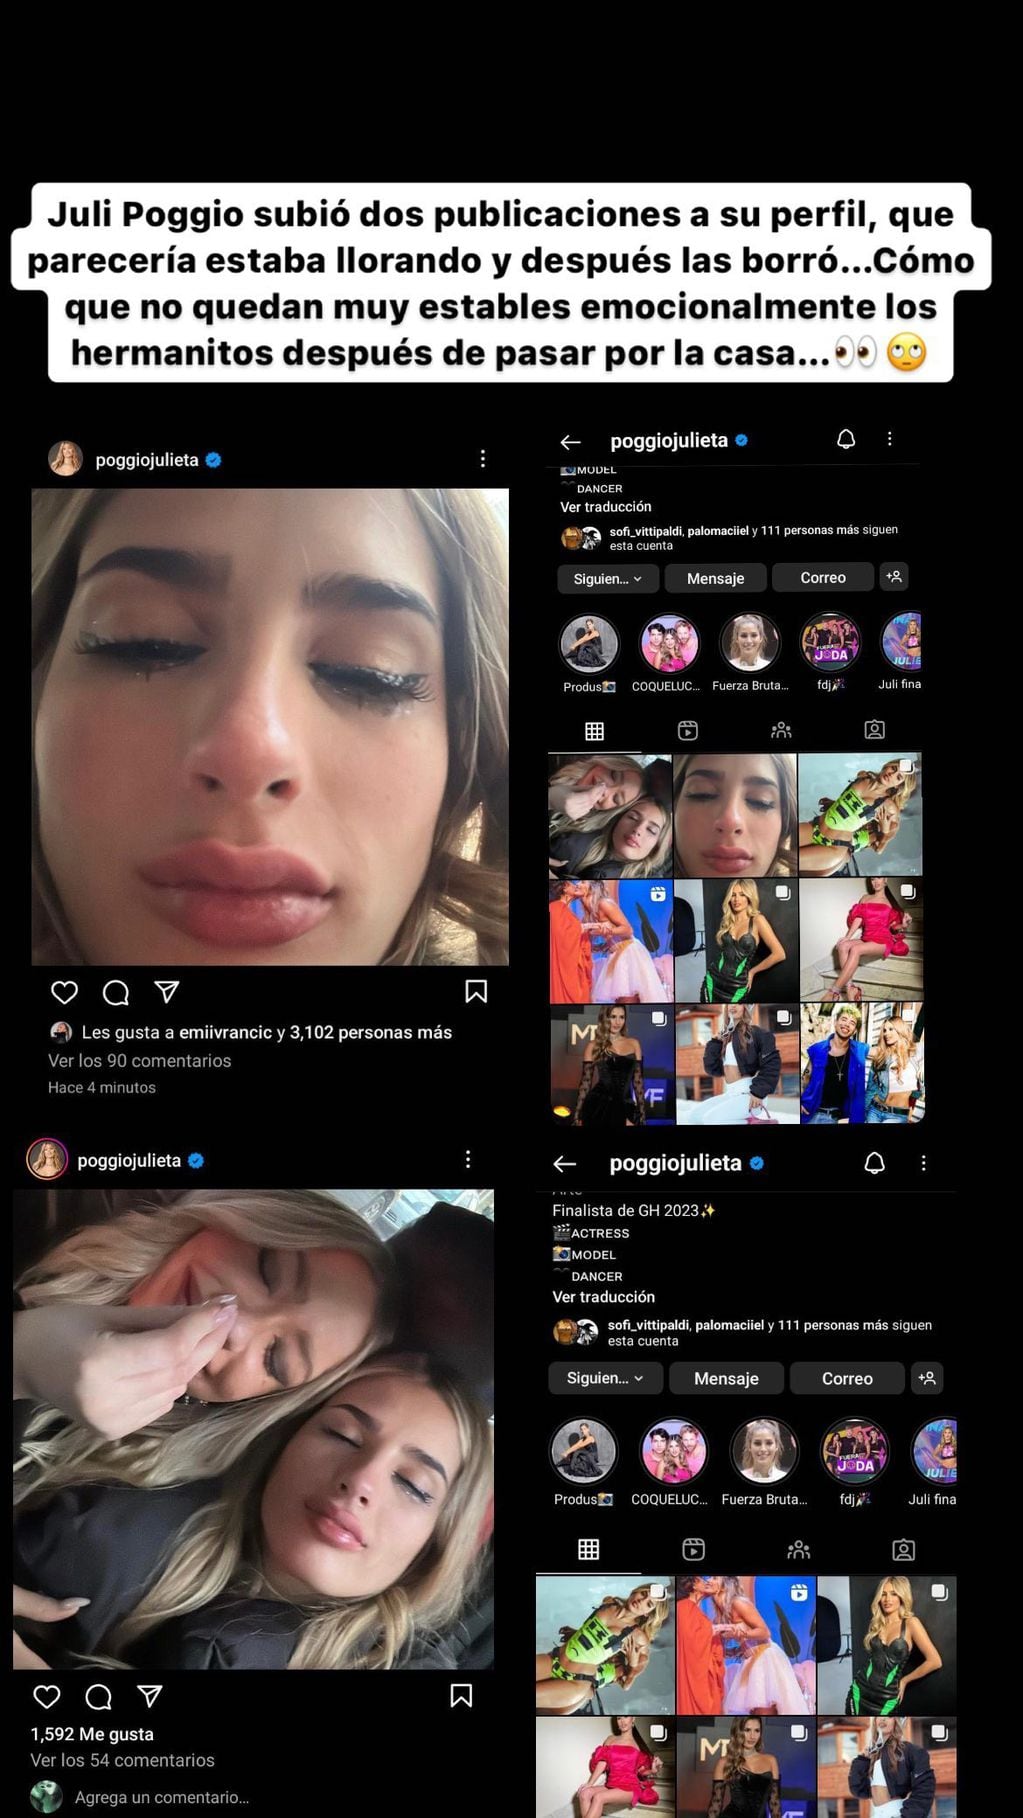 Pochi de Gossipeame detectó las dos fotos de Julieta Poggio llorando